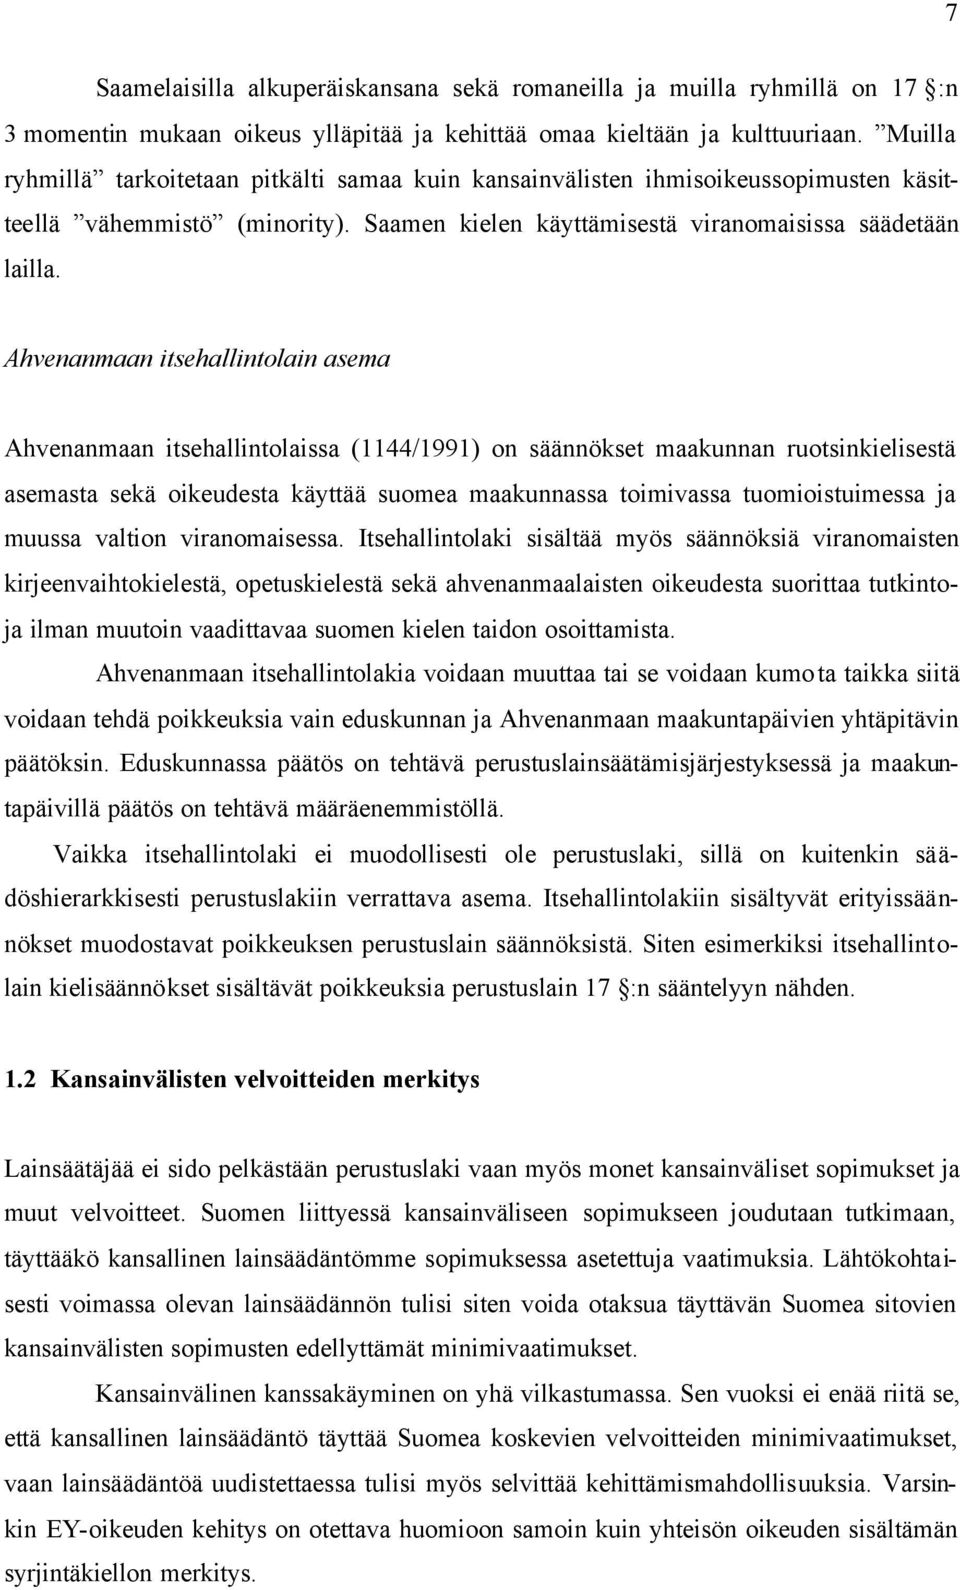 Ahvenanmaan itsehallintolain asema Ahvenanmaan itsehallintolaissa (1144/1991) on säännökset maakunnan ruotsinkielisestä asemasta sekä oikeudesta käyttää suomea maakunnassa toimivassa tuomioistuimessa